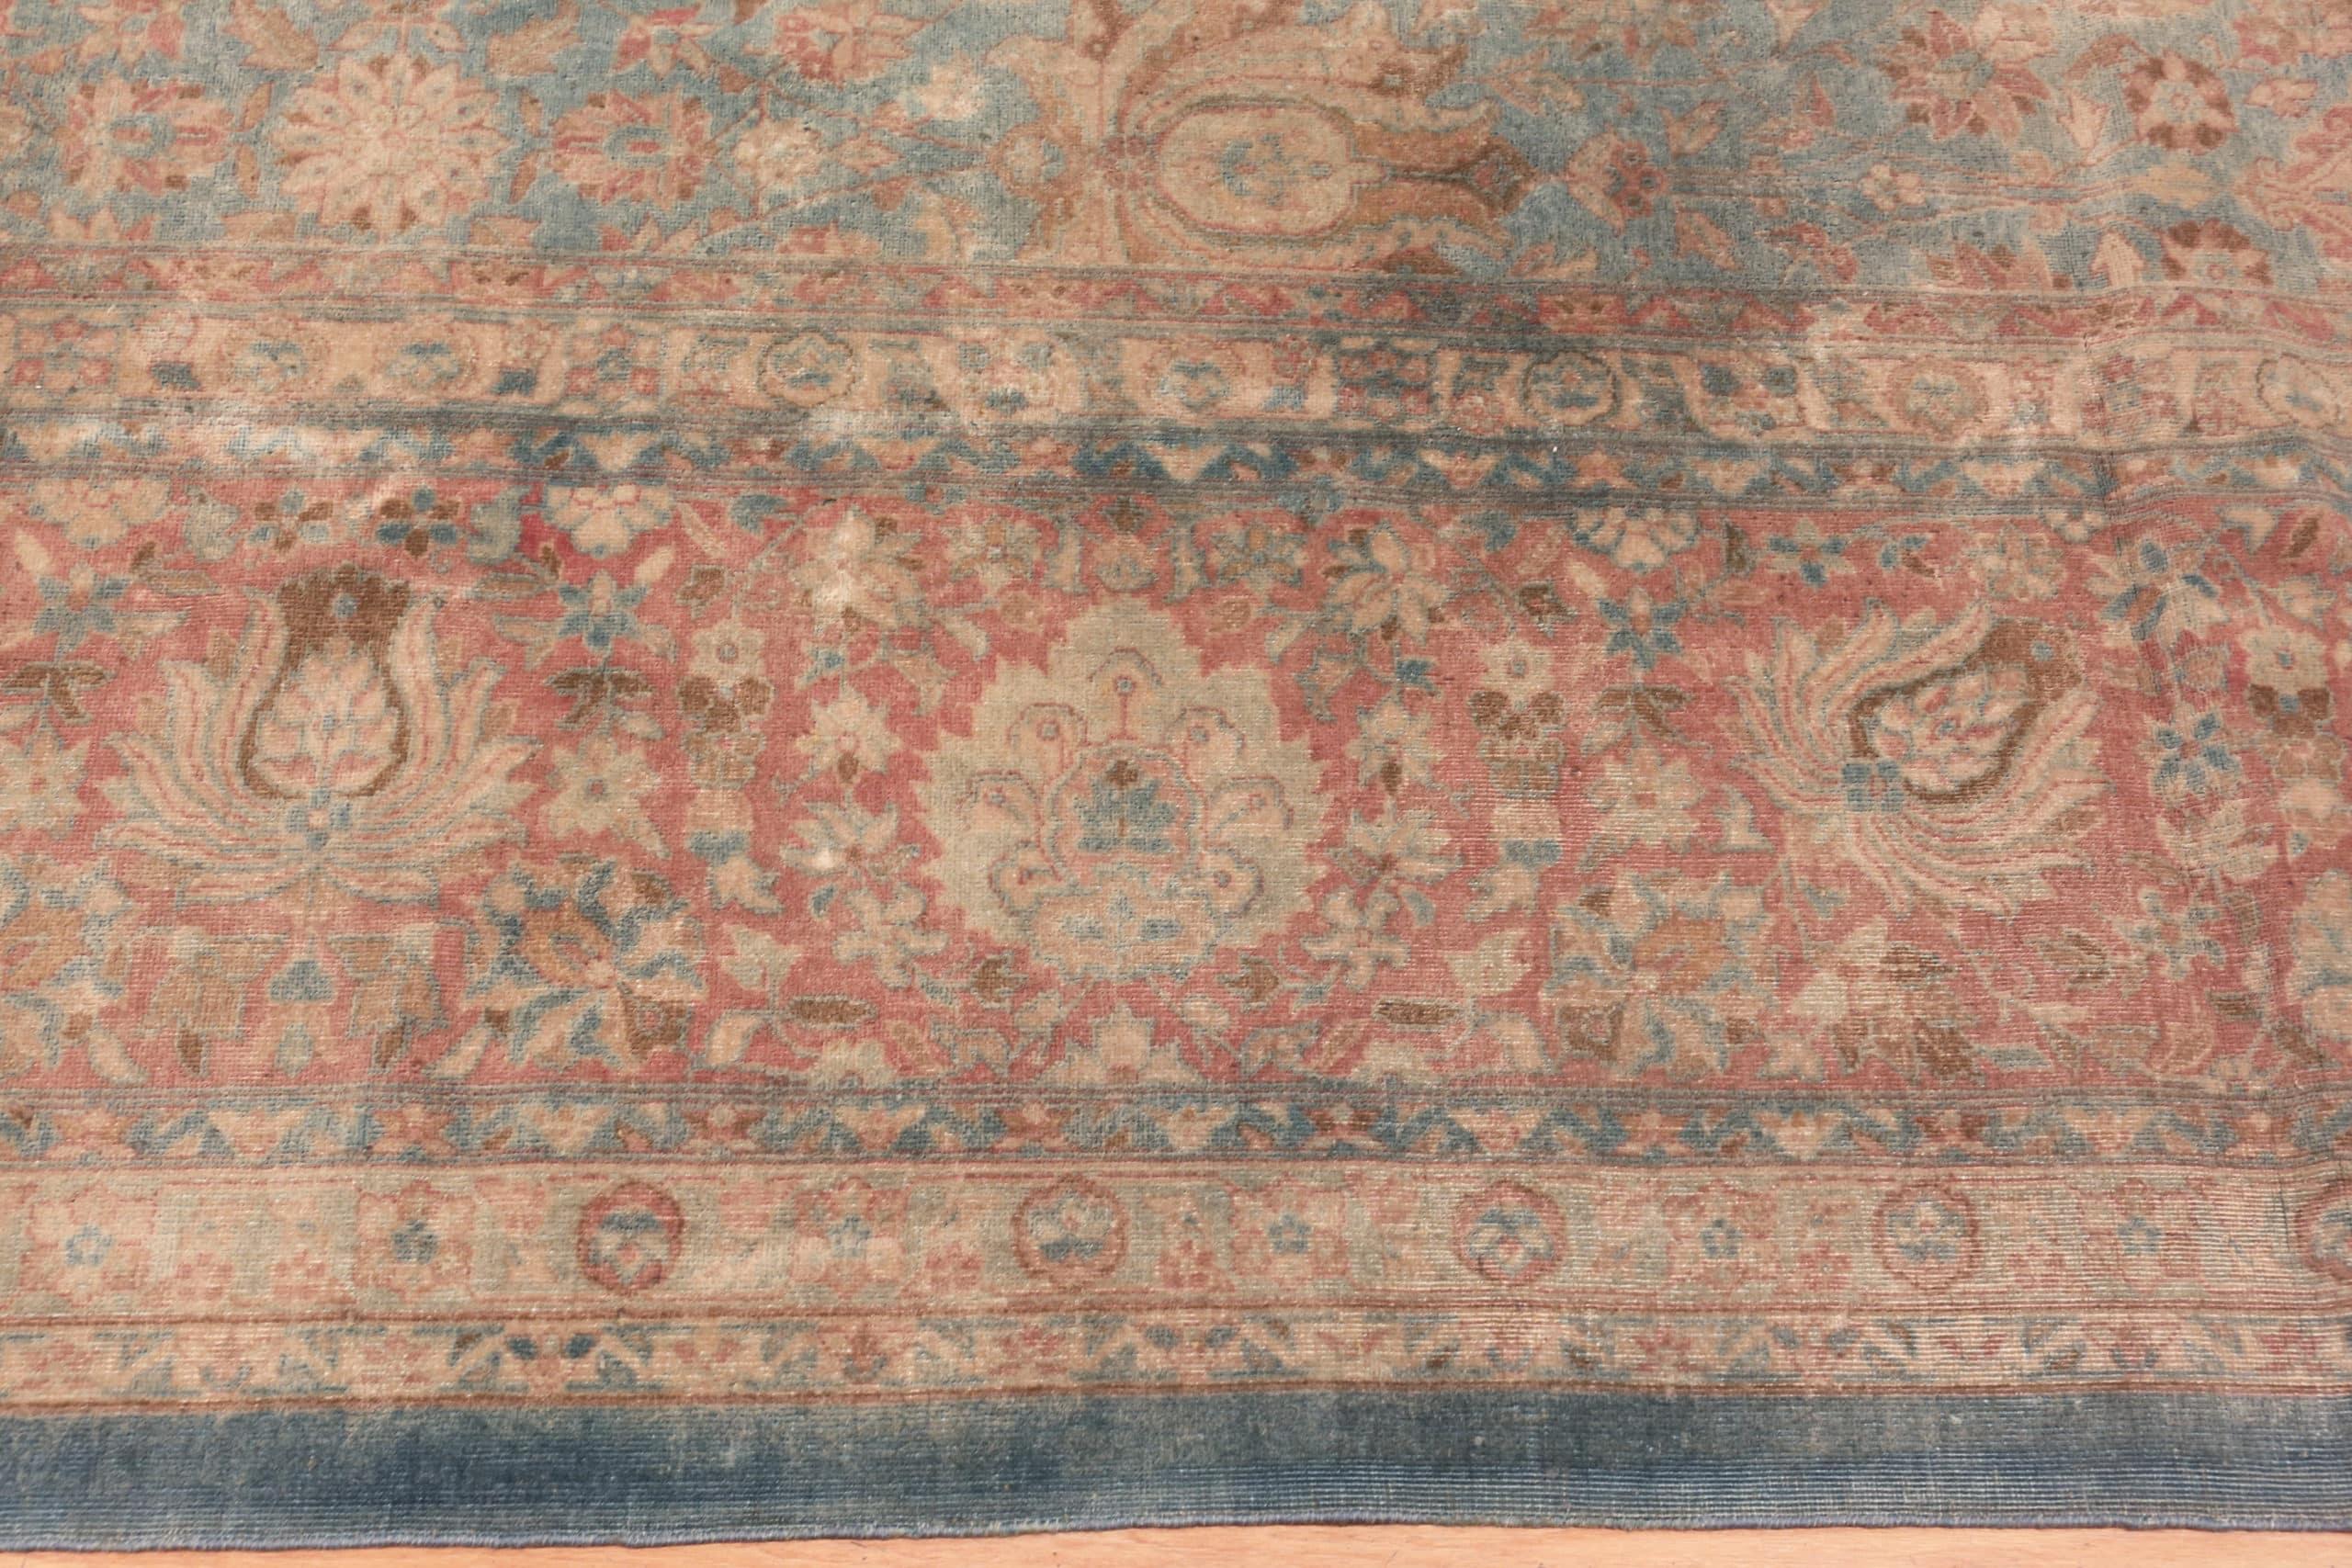 Kirman Beautiful Antique Persian Kerman Carpet 13'10